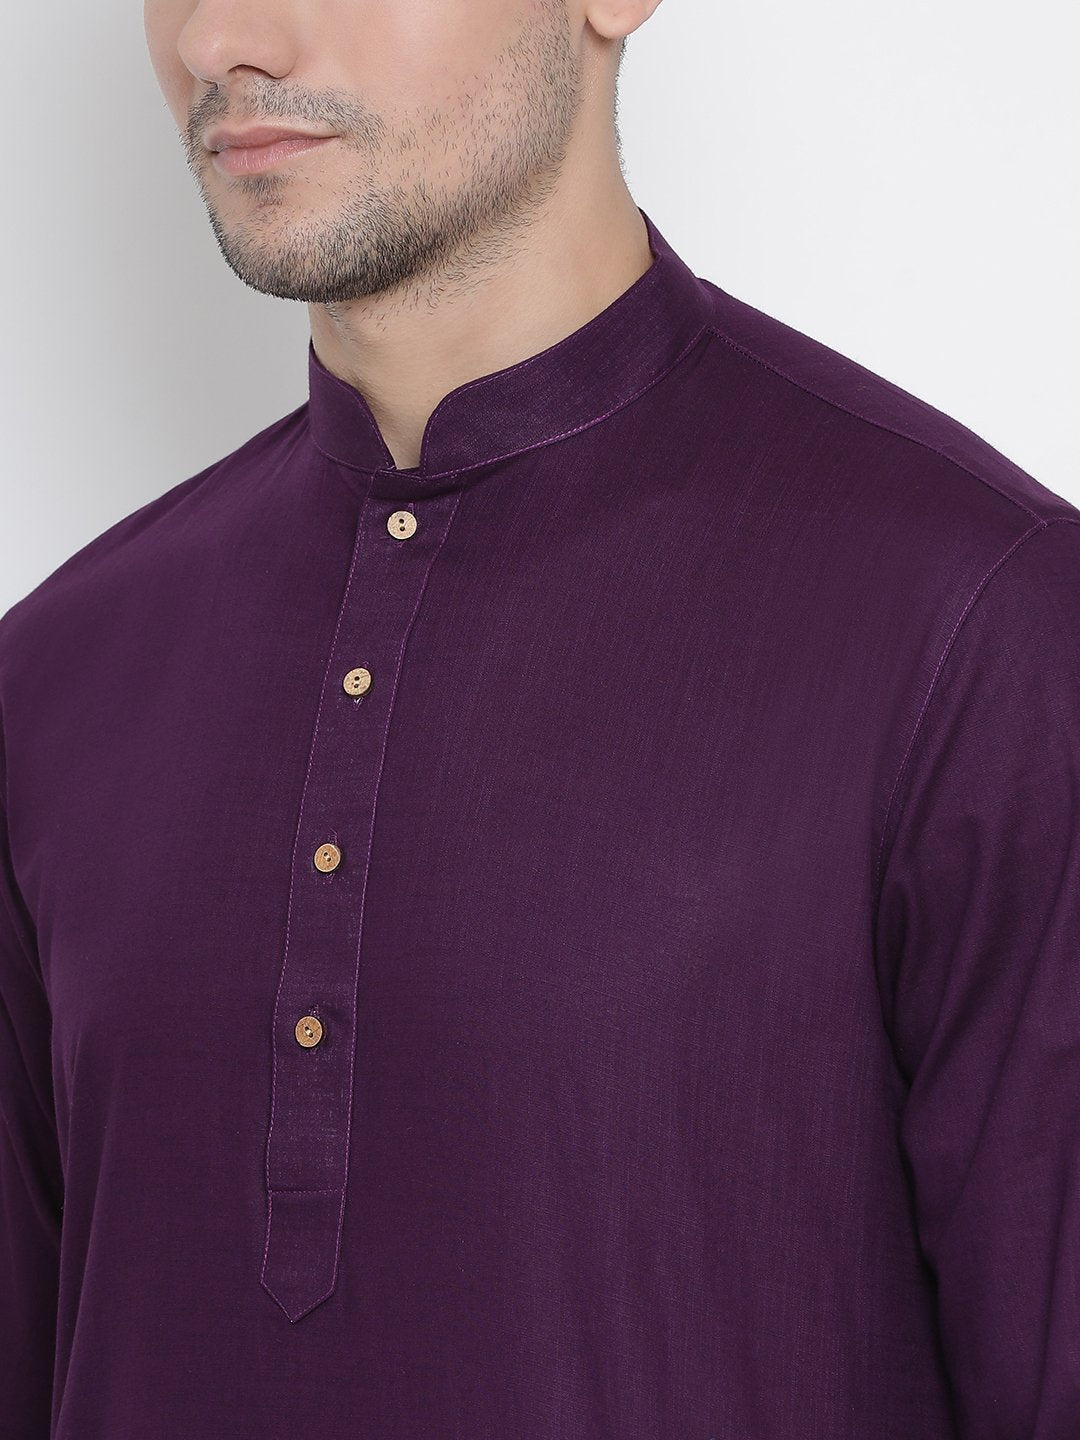 Men's Purple Cotton Kurta